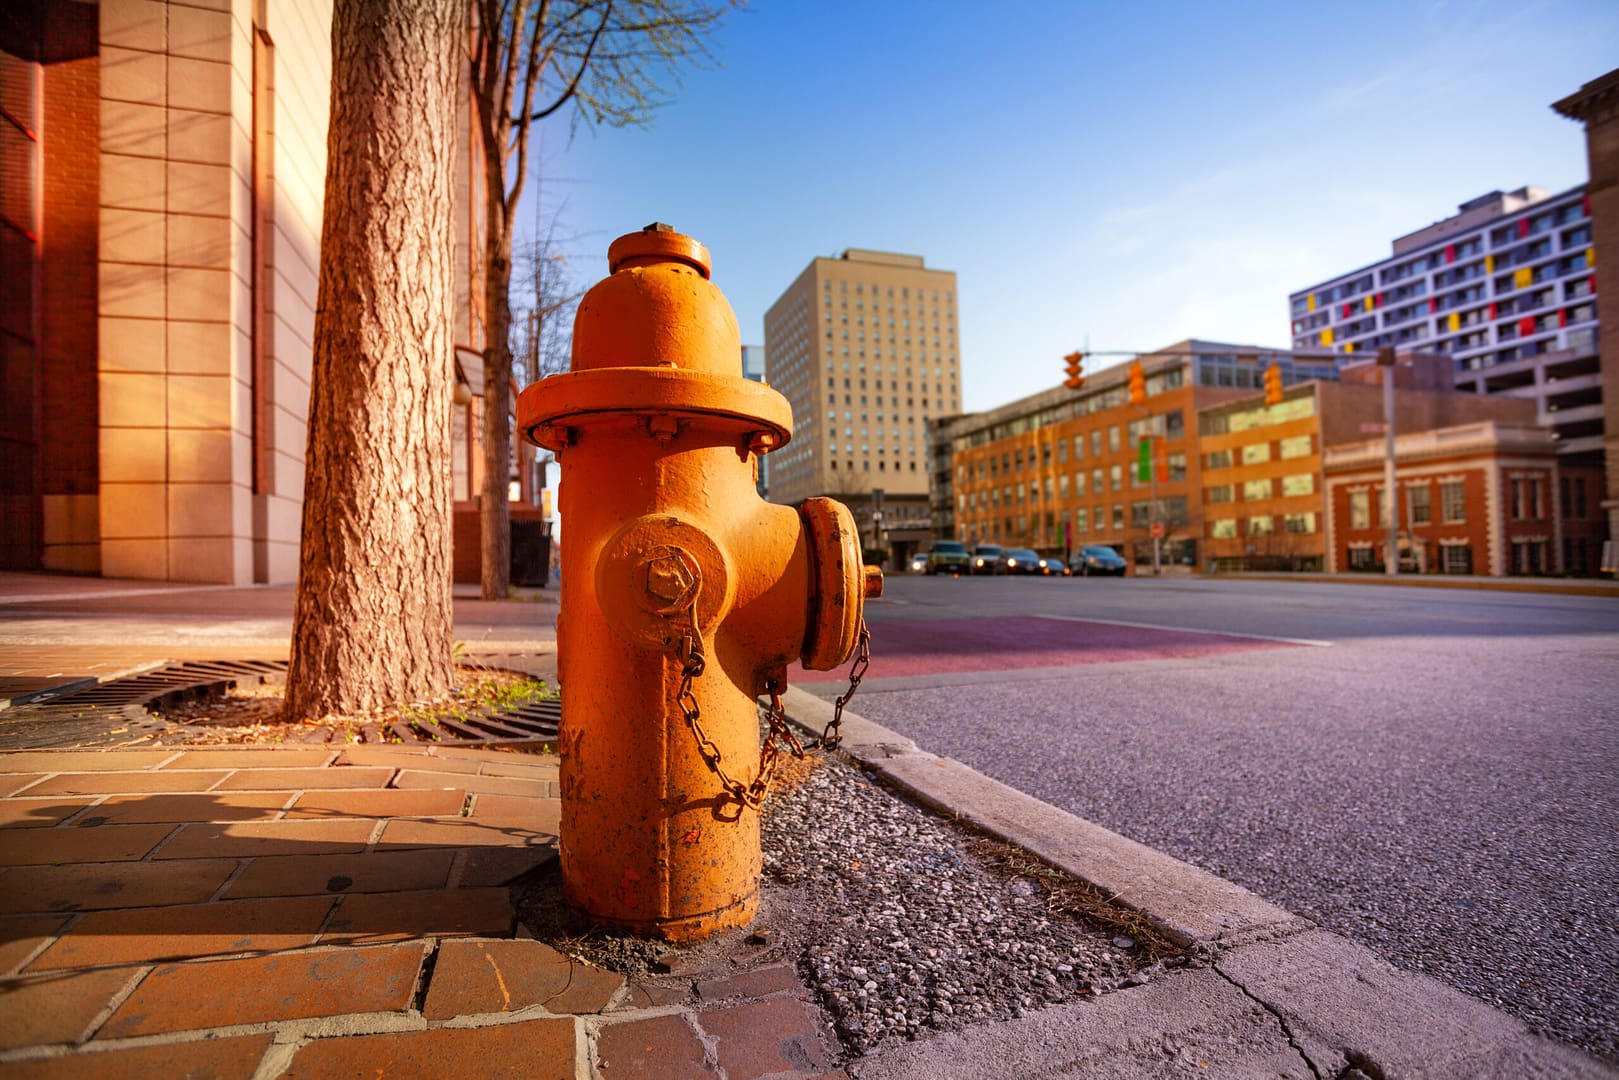 Fire hydrant on sidewalk